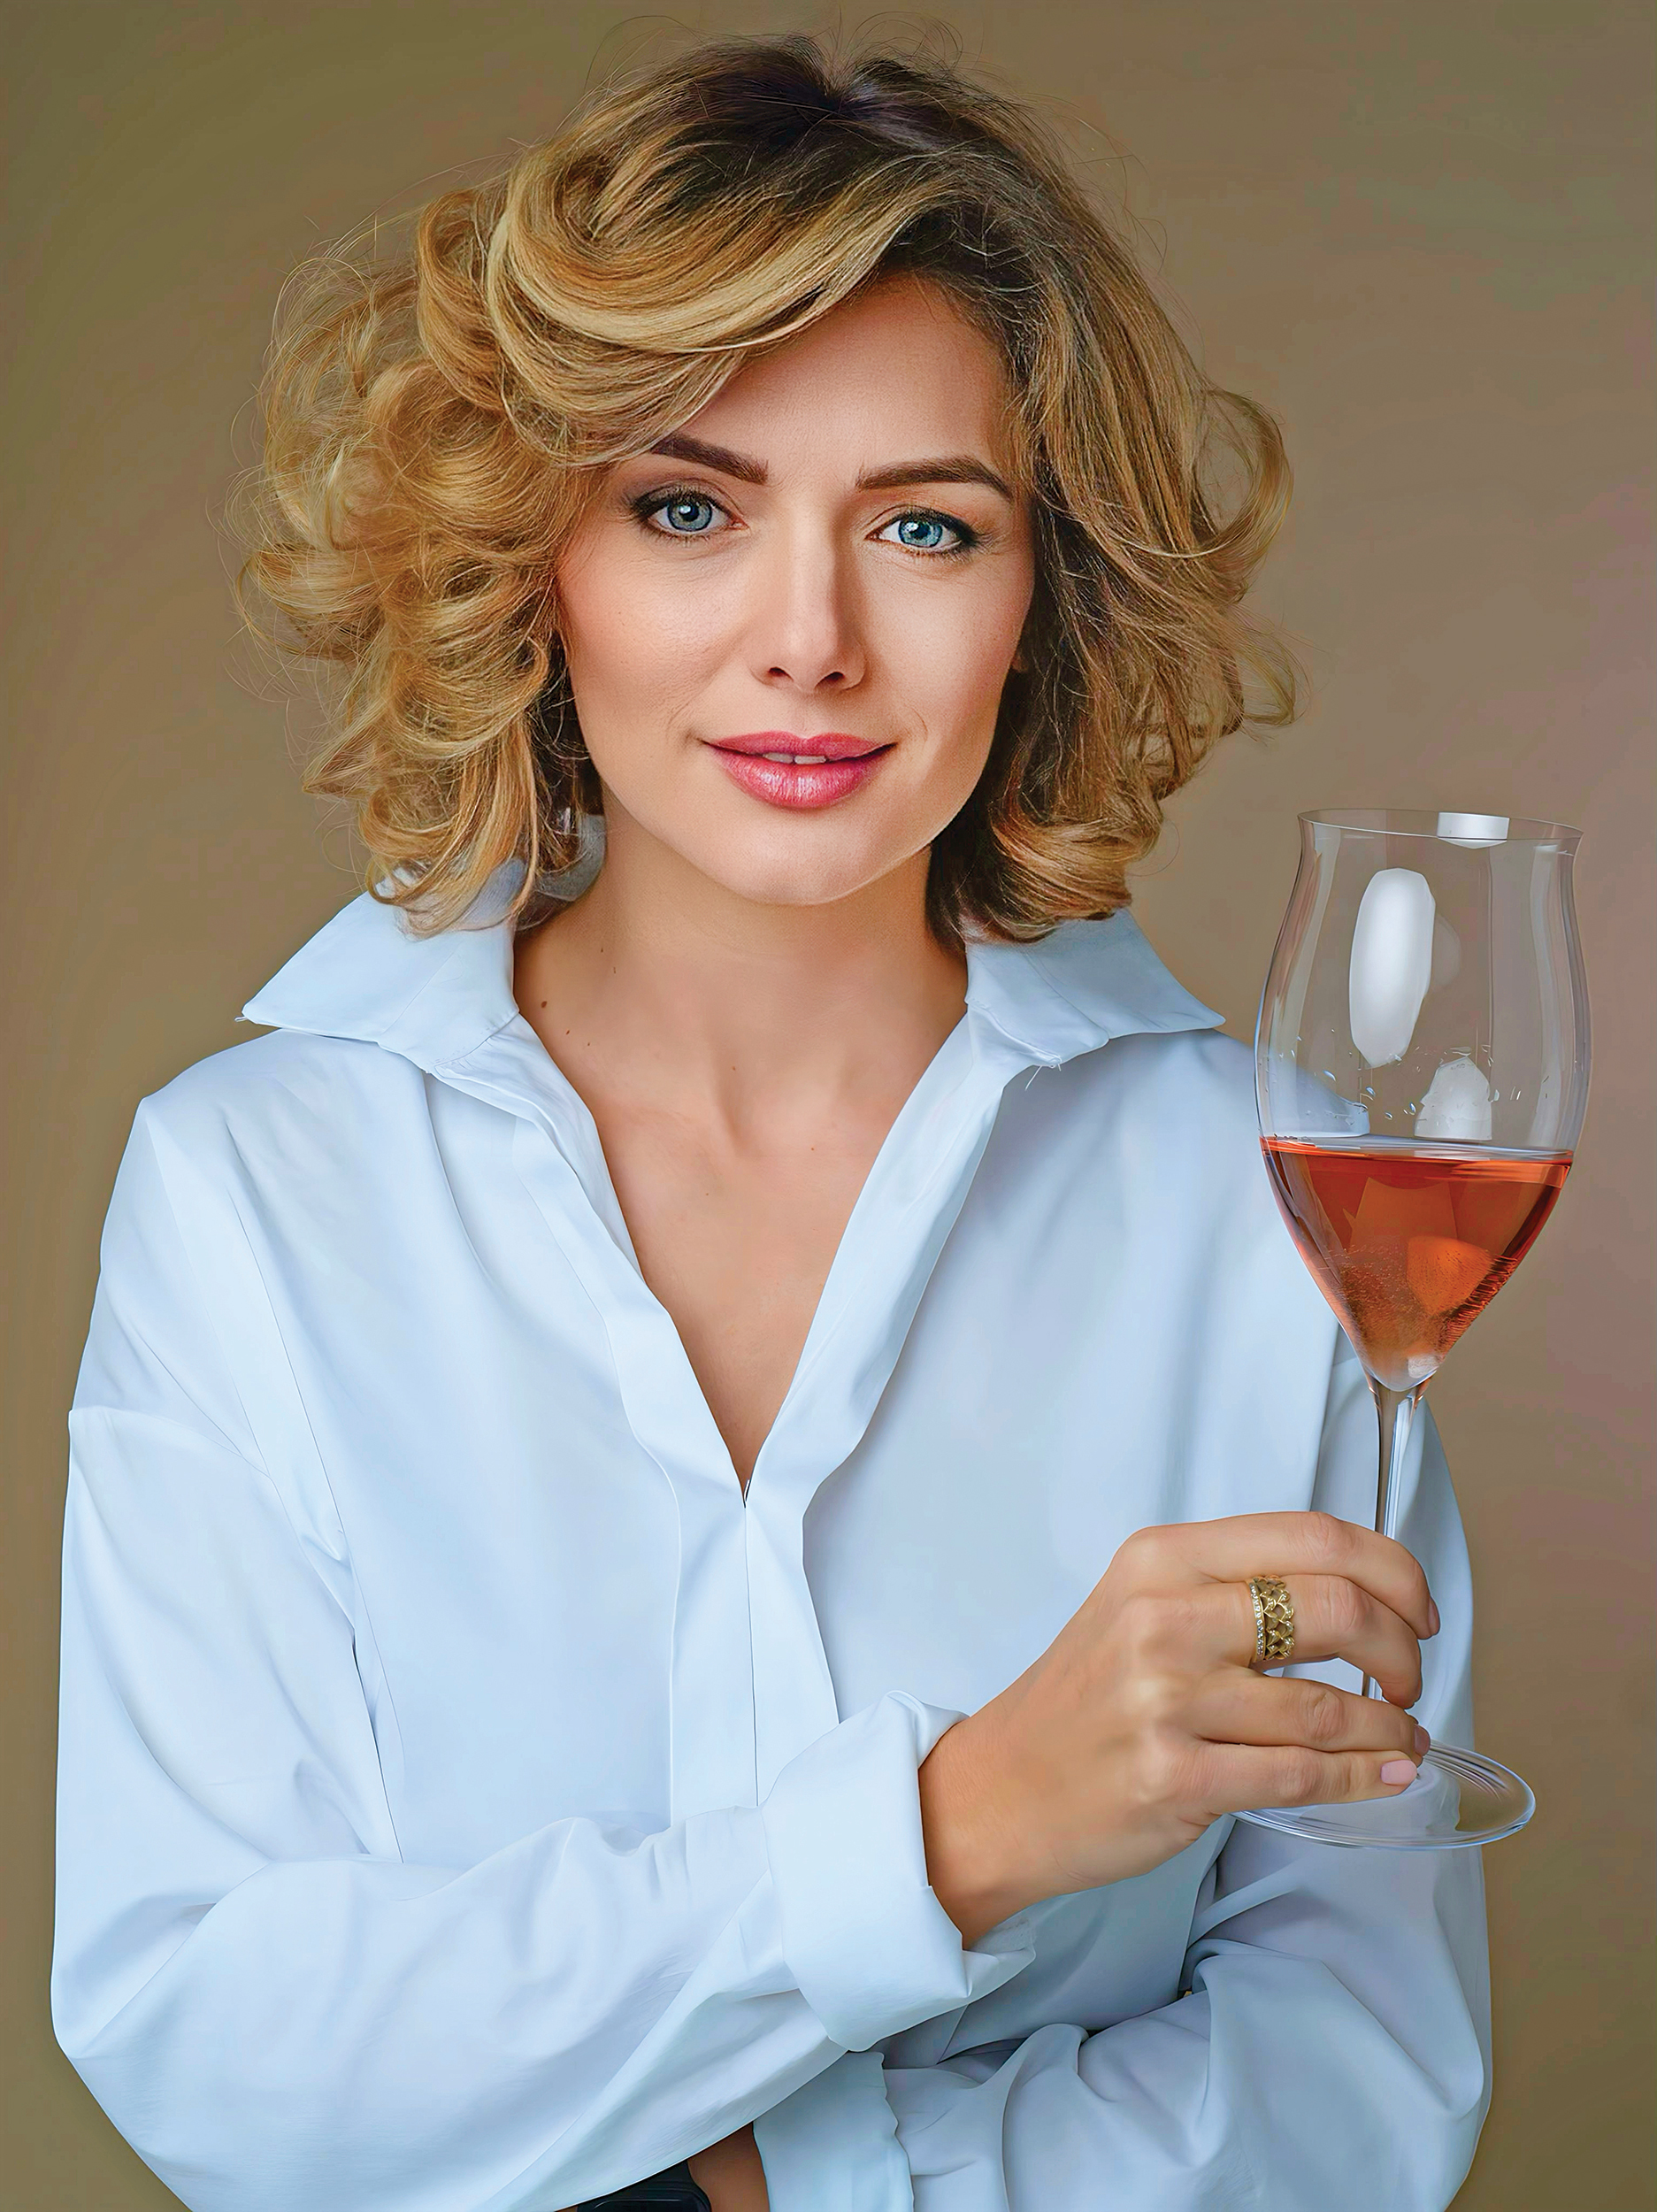 Business Magazin. Ce hobbyuri are Marinela Ardelean, proprietarul Wines of Romania şi unul dintre cei mai cunoscuţi critici de vin 